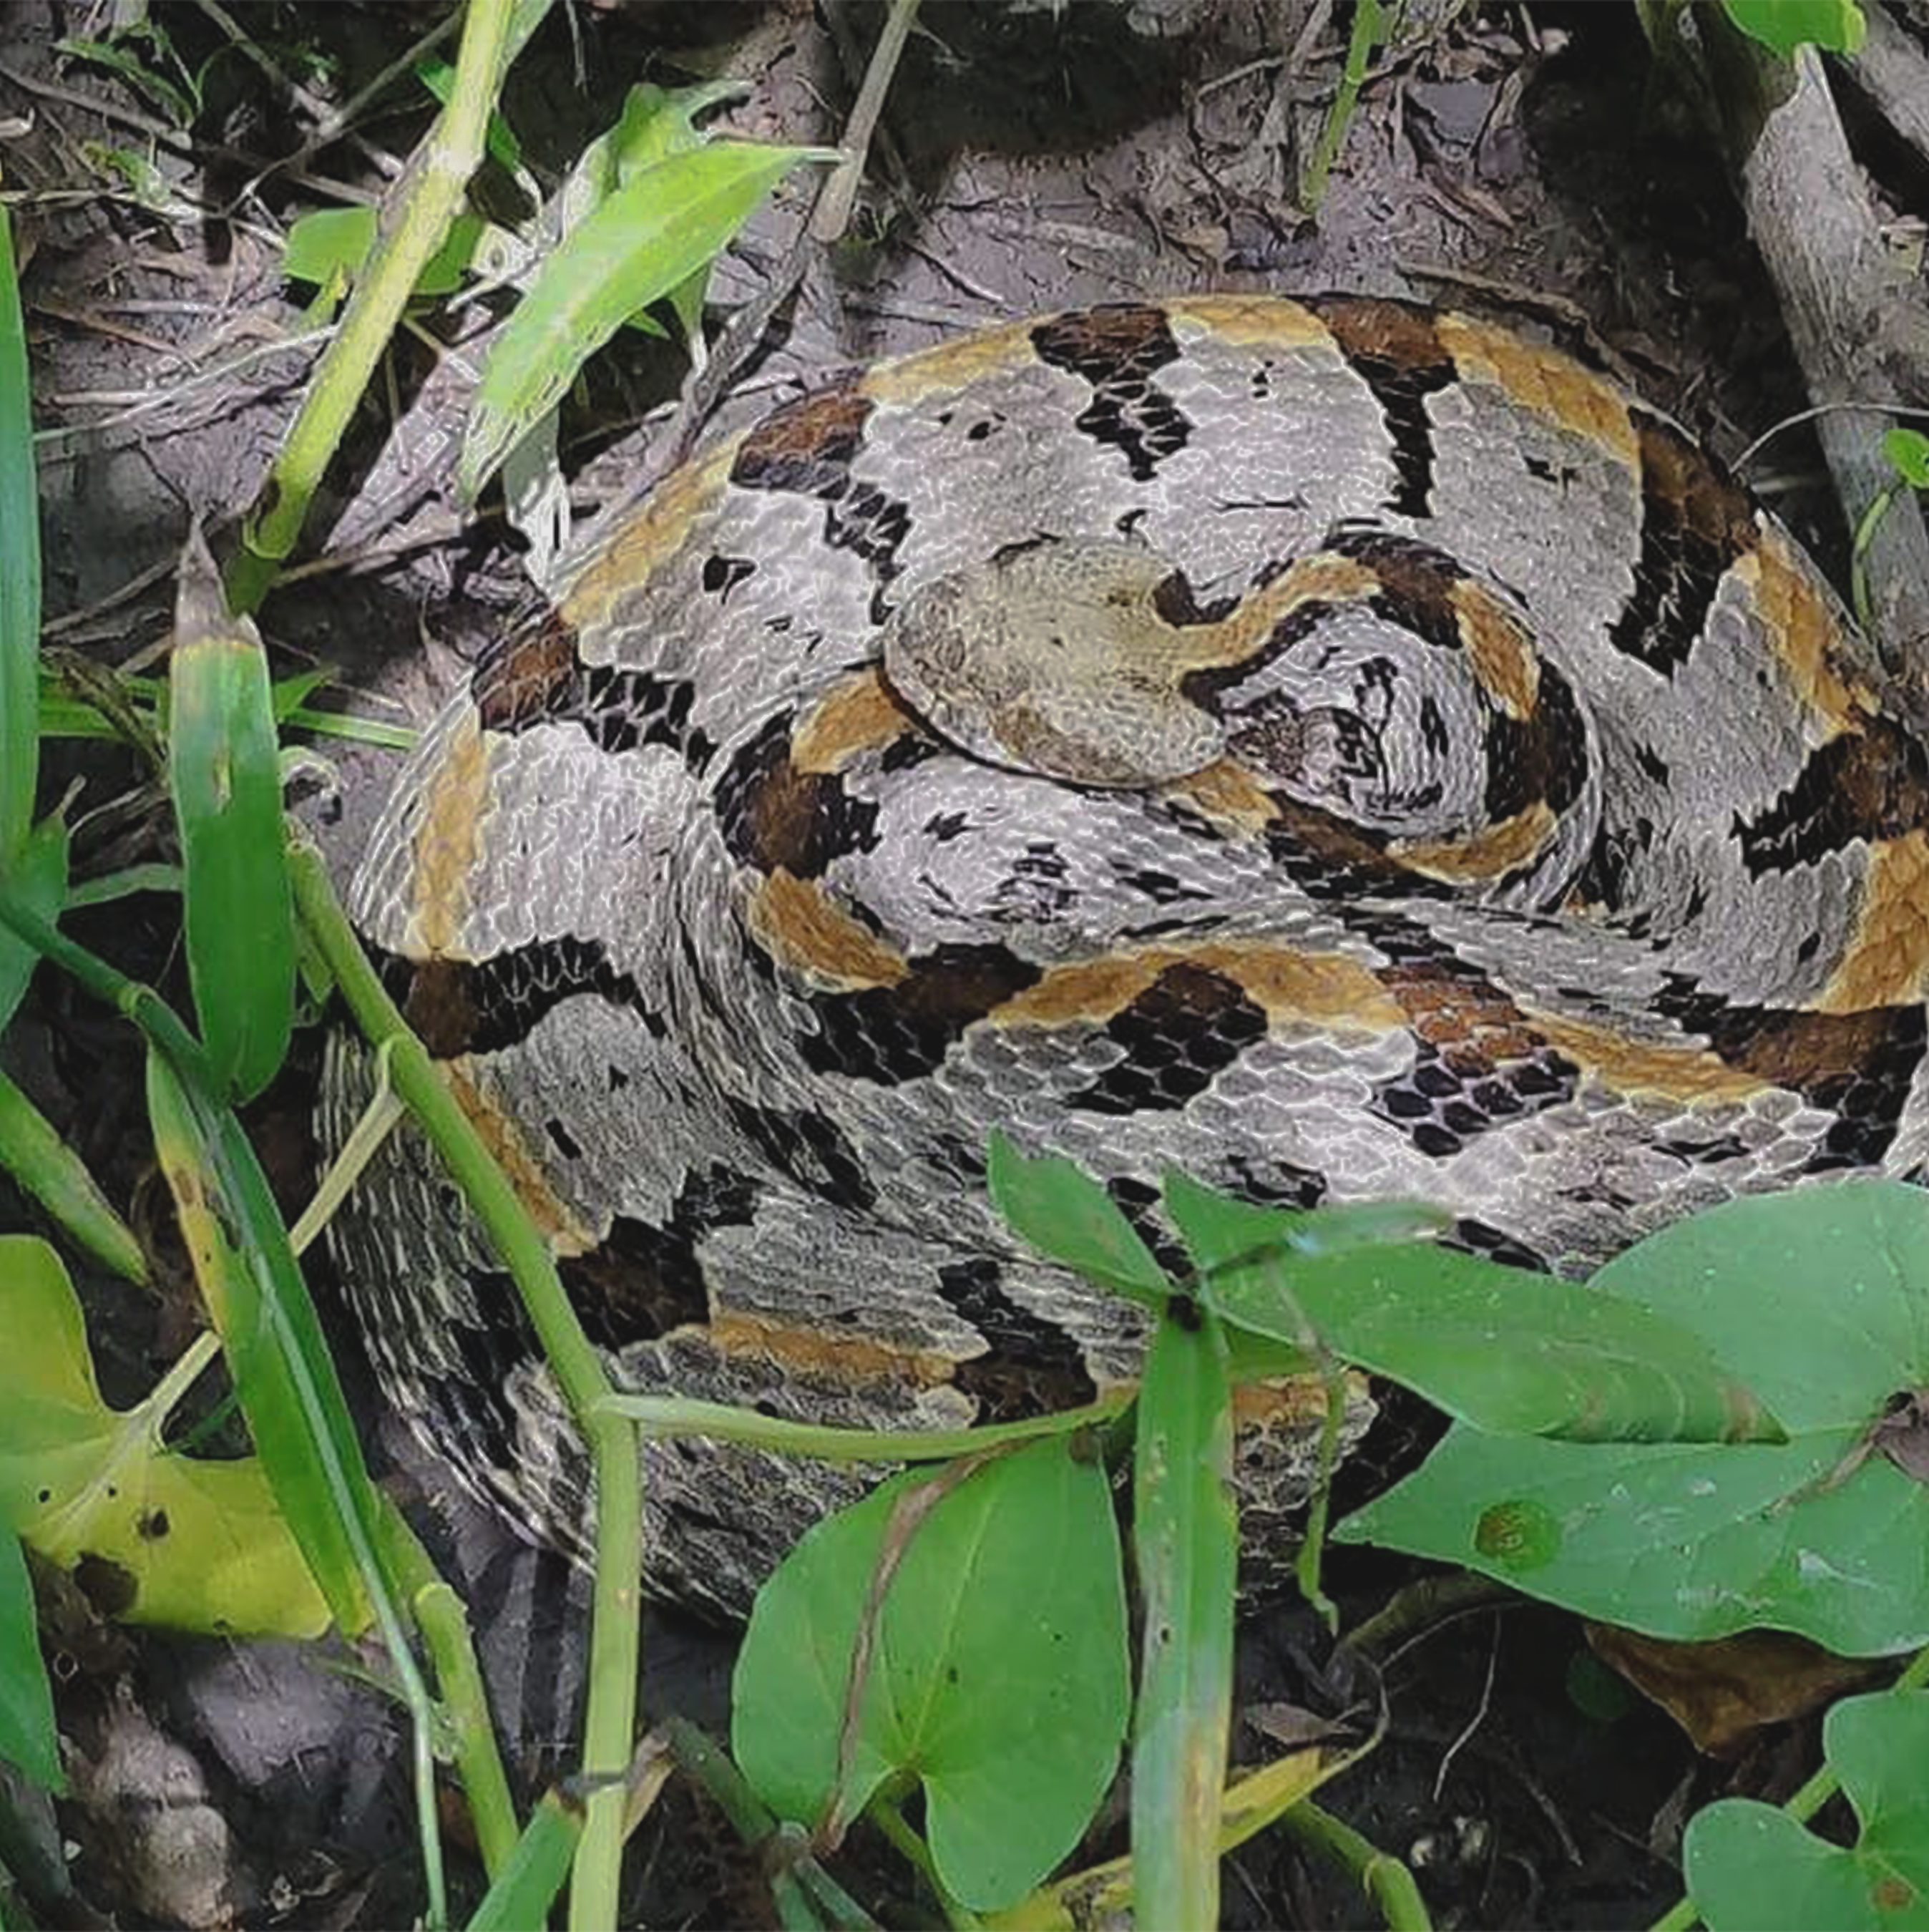 Timber Rattlesnake in Virginia